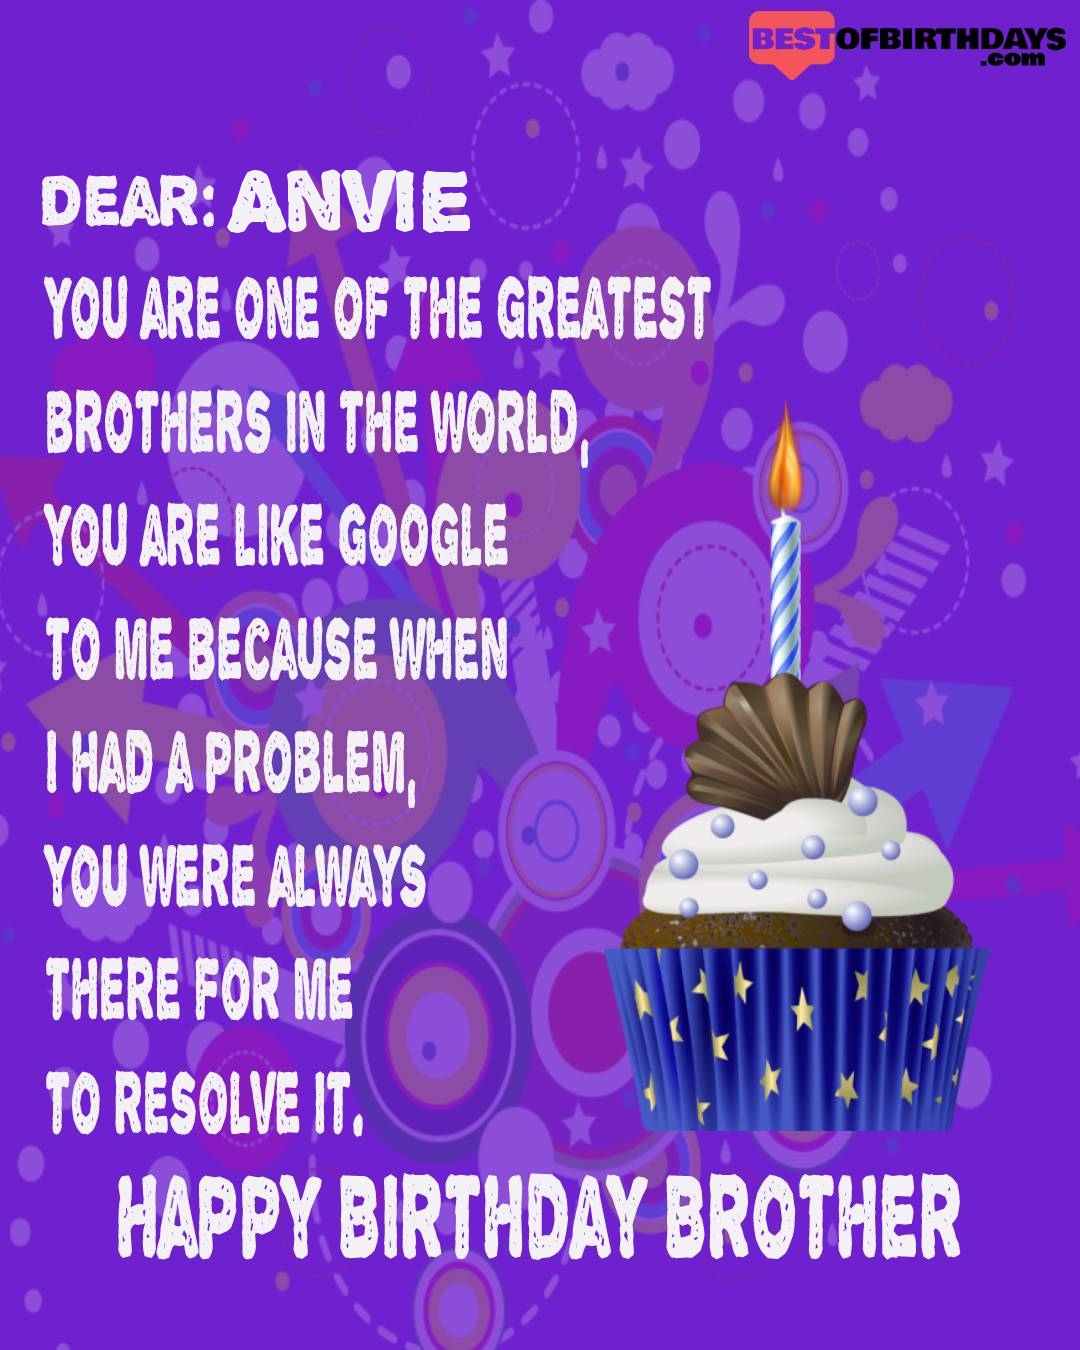 Happy birthday anvie bhai brother bro